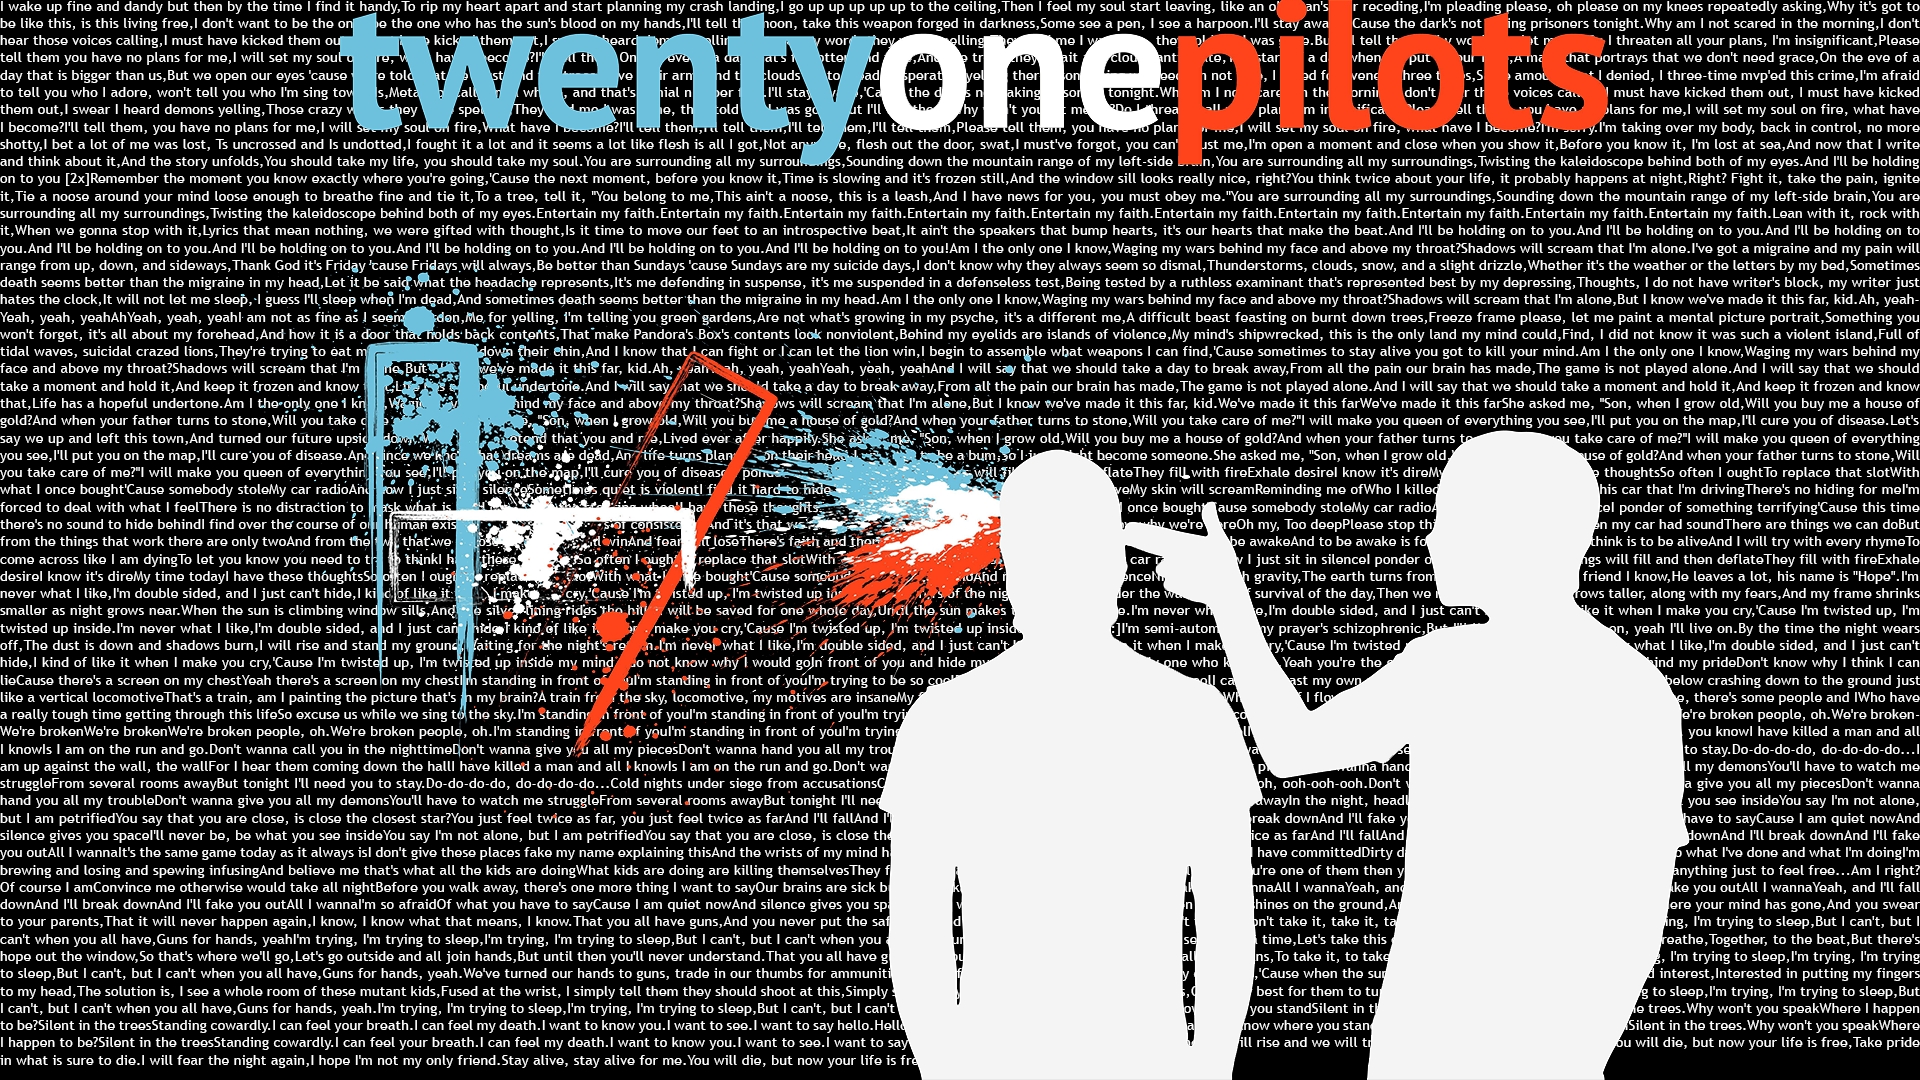 twenty one pilots wallpapers - wallpaper cave